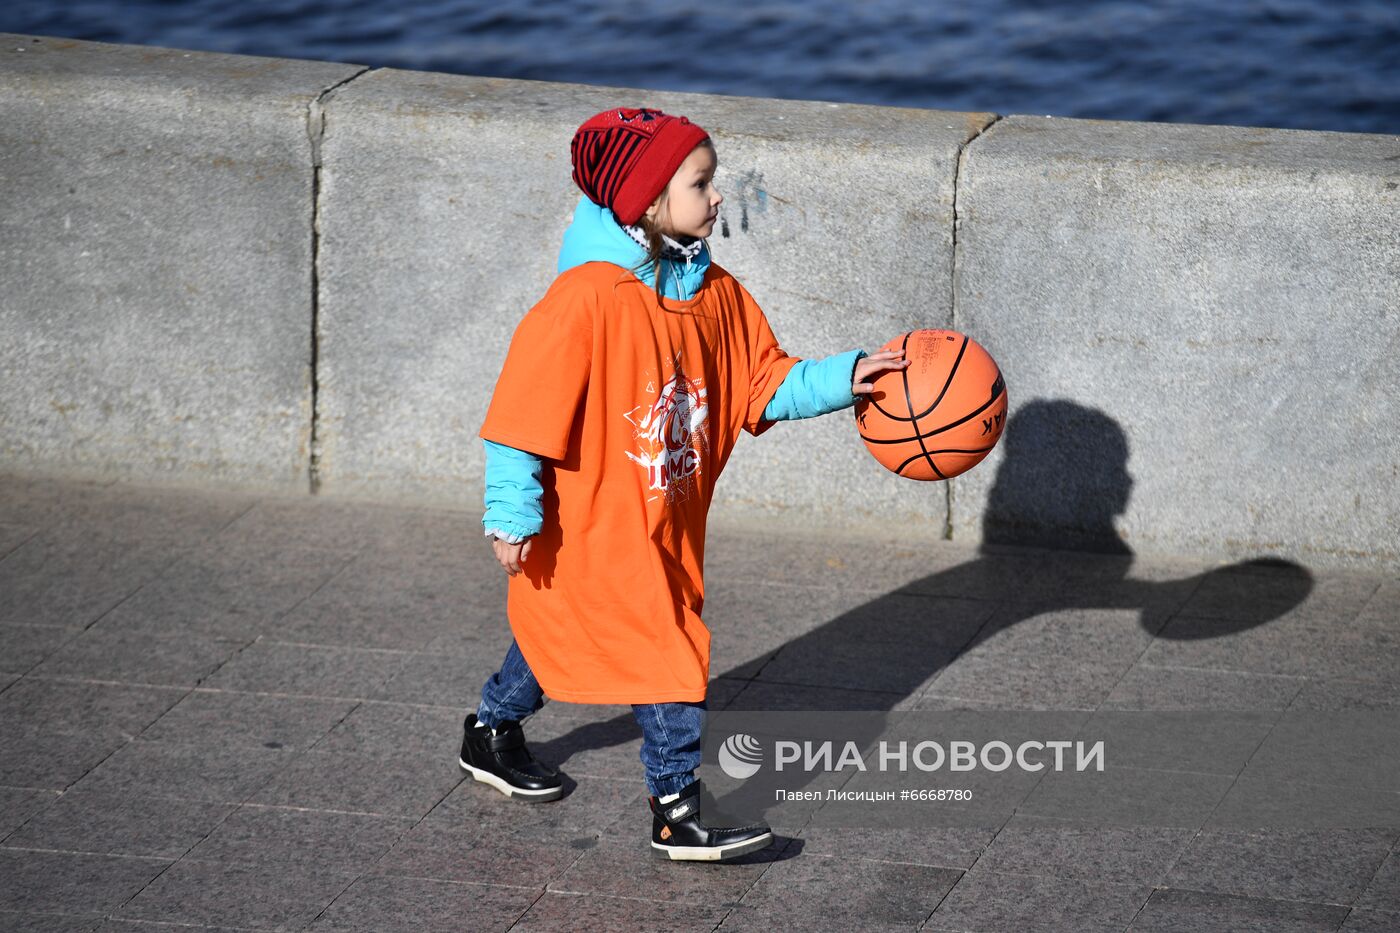 Установка рекорда России по массовому одновременному ведению баскетбольного мяча